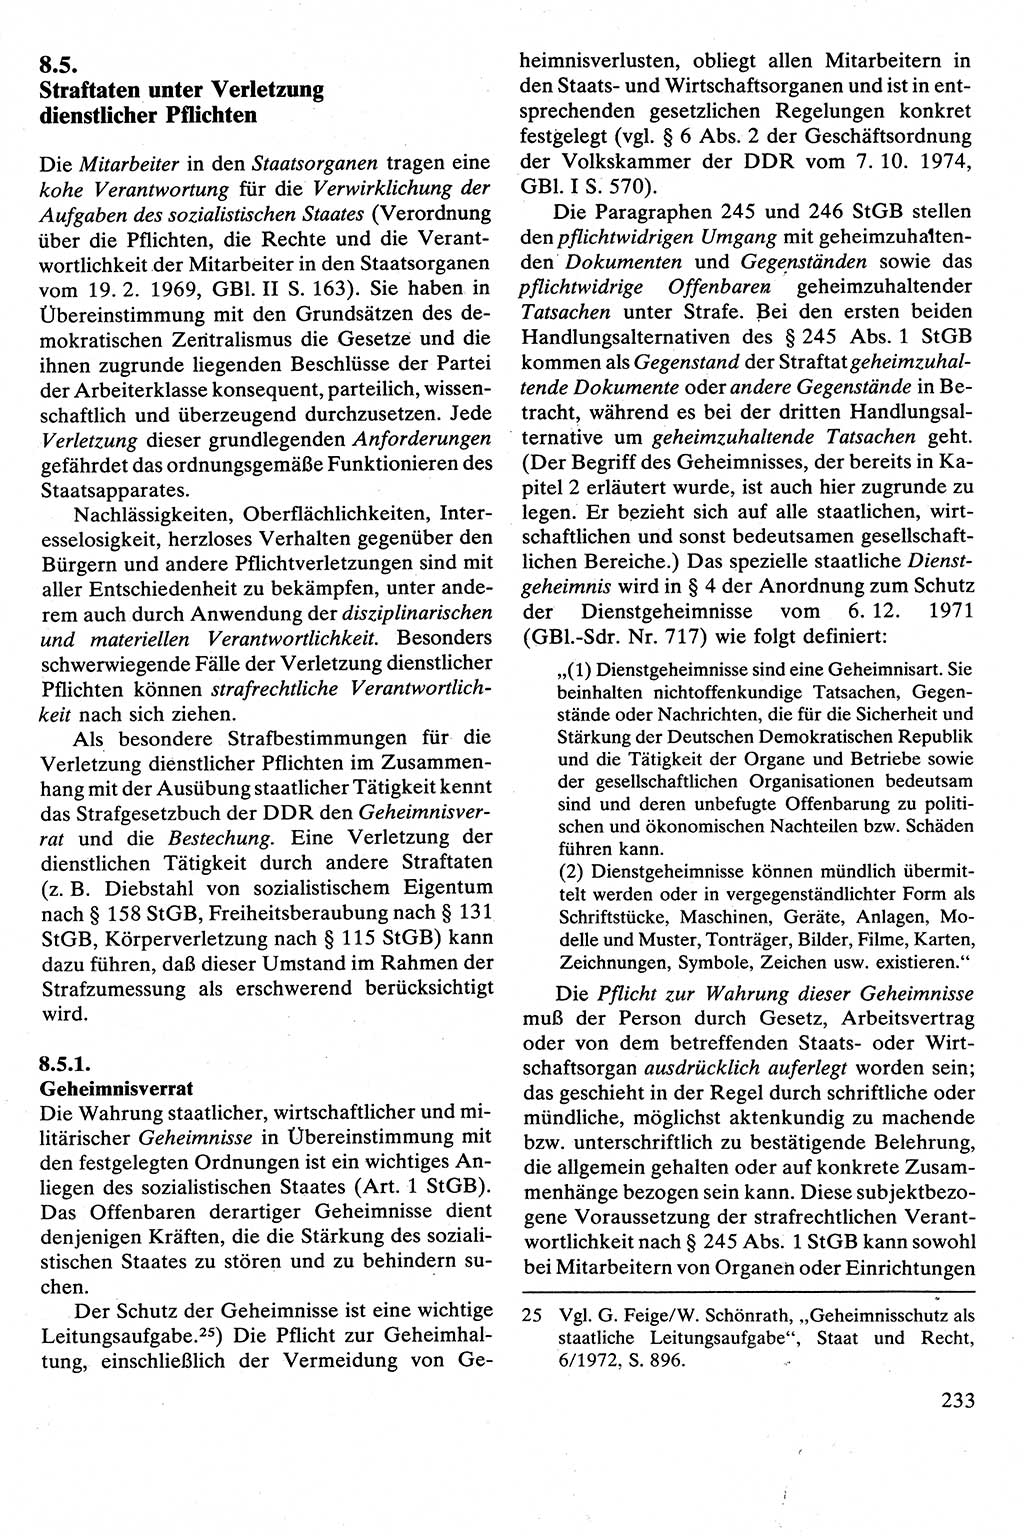 Strafrecht [Deutsche Demokratische Republik (DDR)], Besonderer Teil, Lehrbuch 1981, Seite 233 (Strafr. DDR BT Lb. 1981, S. 233)